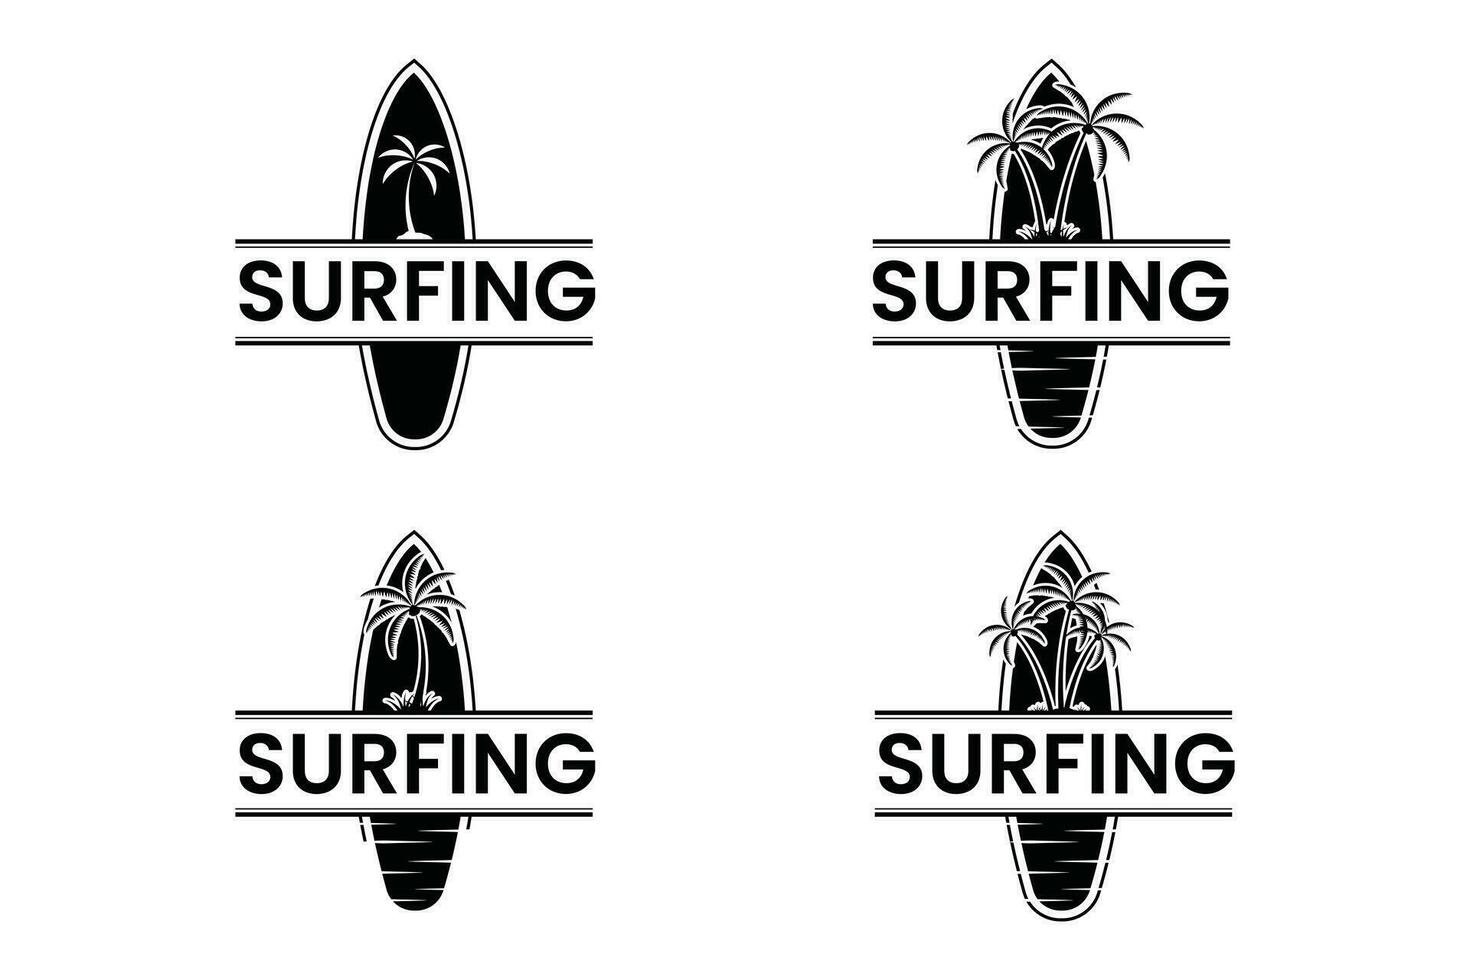 surfar vetor, surfar borda ilustrações, prancha de surfe grampo arte, surf, surfar quadro, surfar silhueta, silhueta, esboço vetor, verão, verão elementos, verão feriado, surgindo camiseta vetor